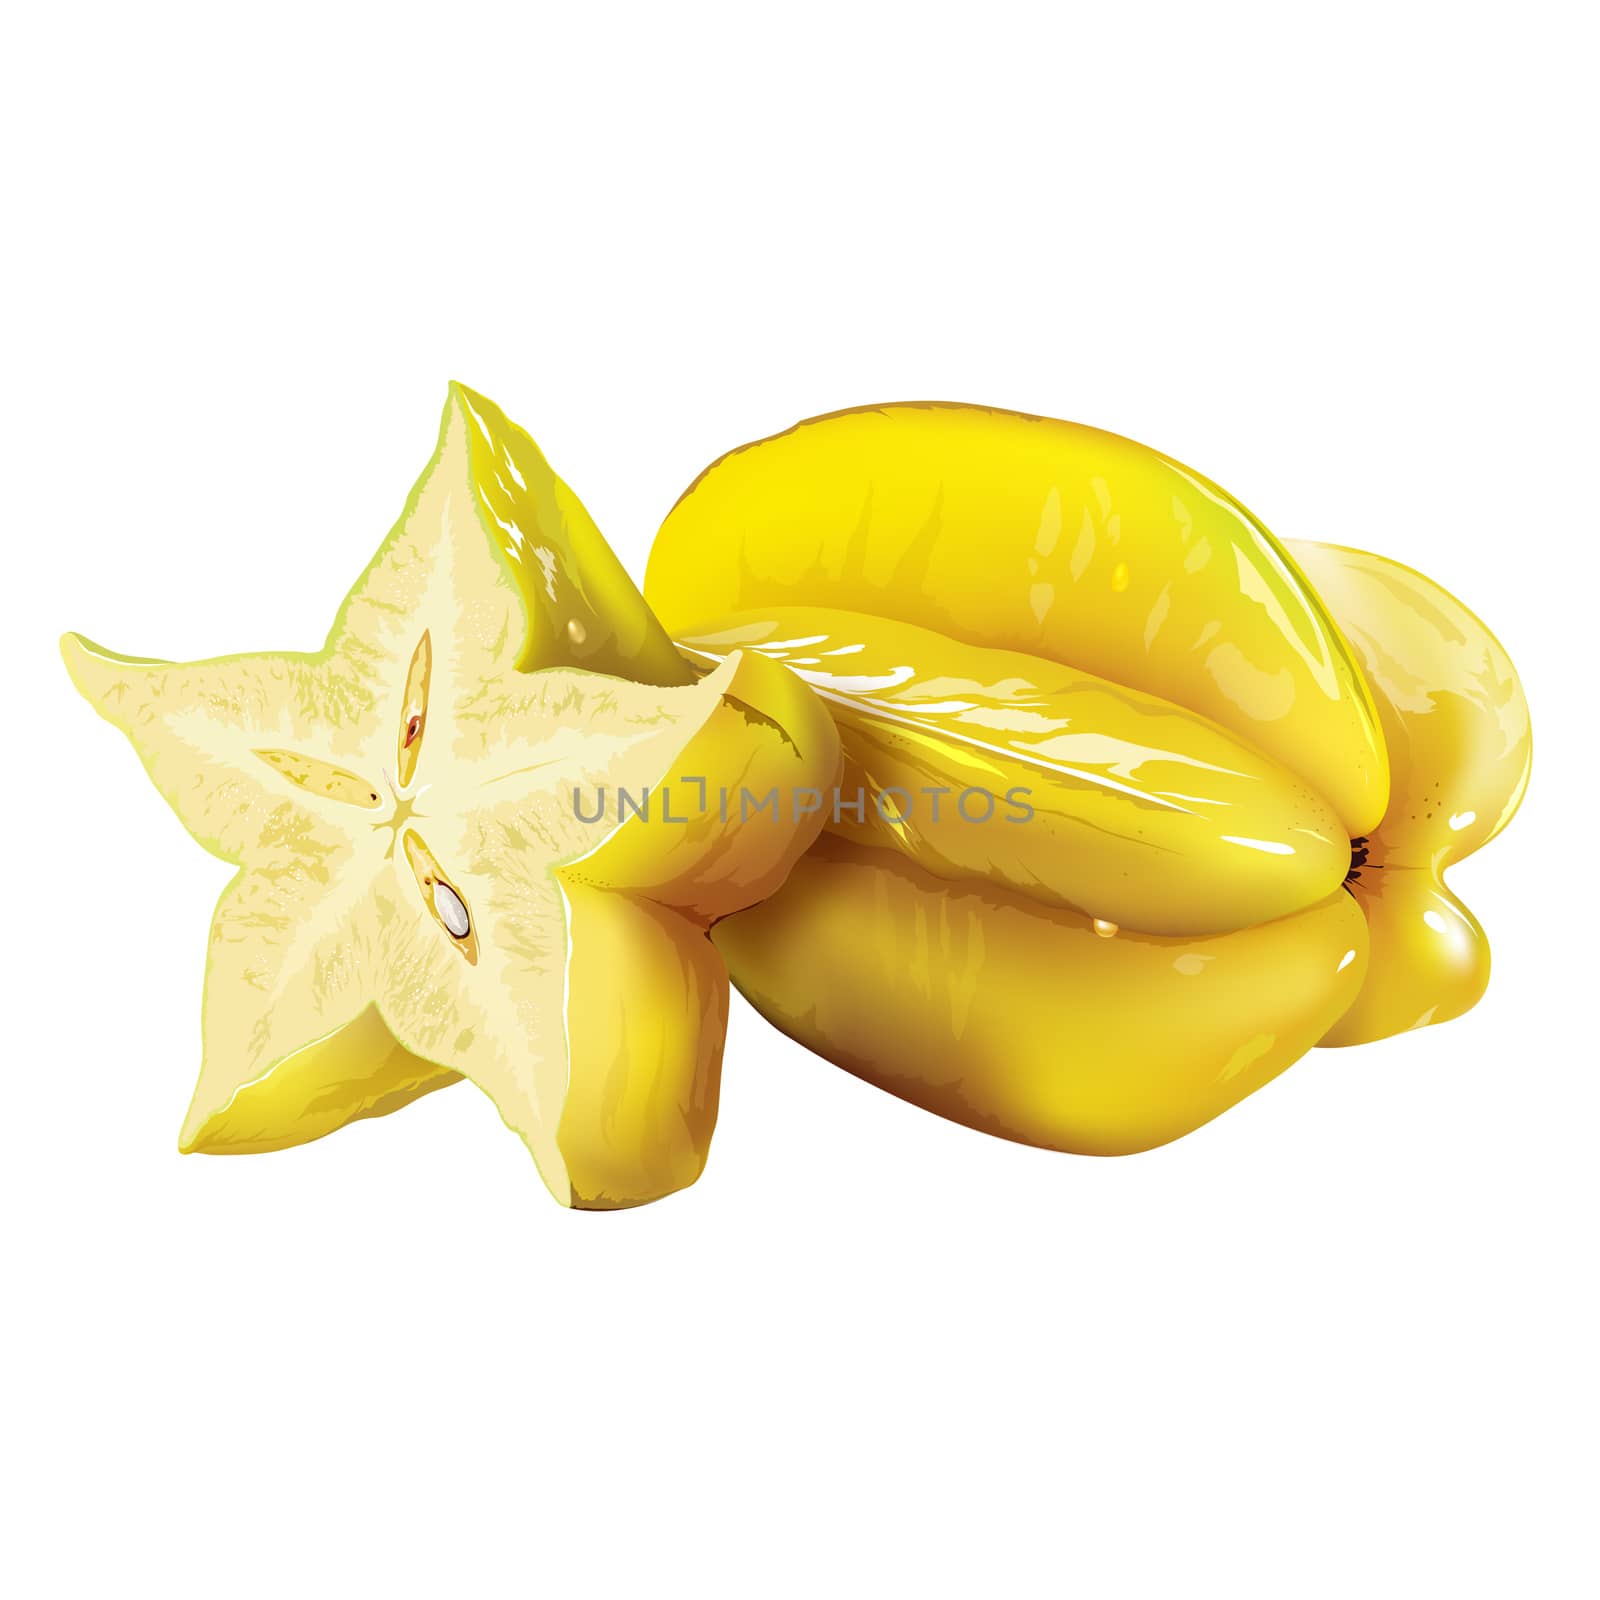 Carambola, starfruit on white background by ConceptCafe